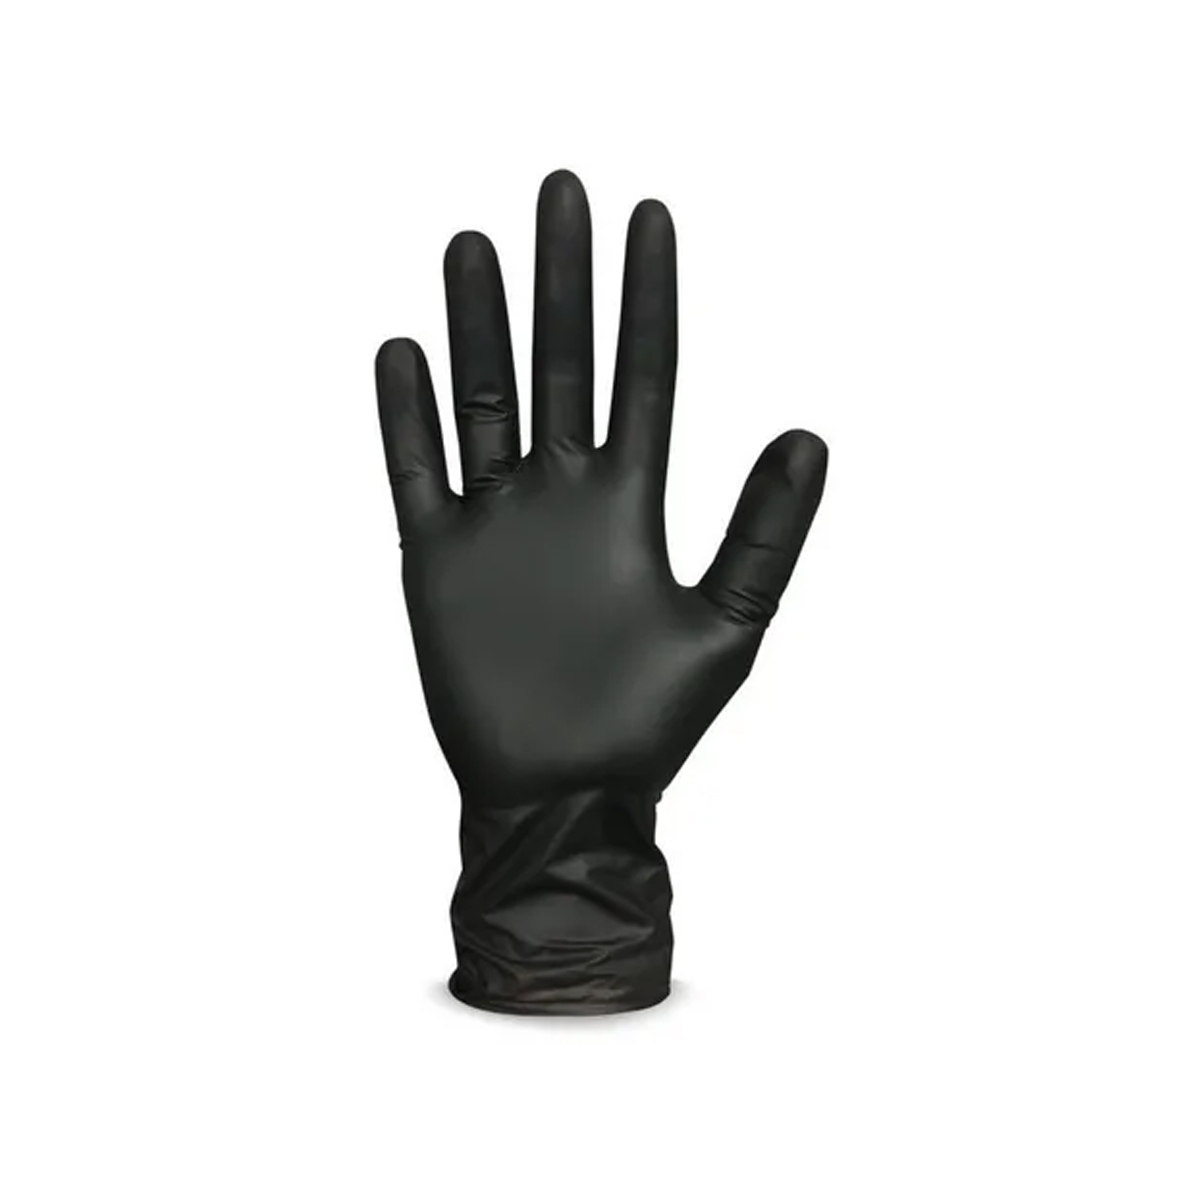 Luva Super Glove Black Skin, Nitrílica Preta, Super Safety, Ca 38645